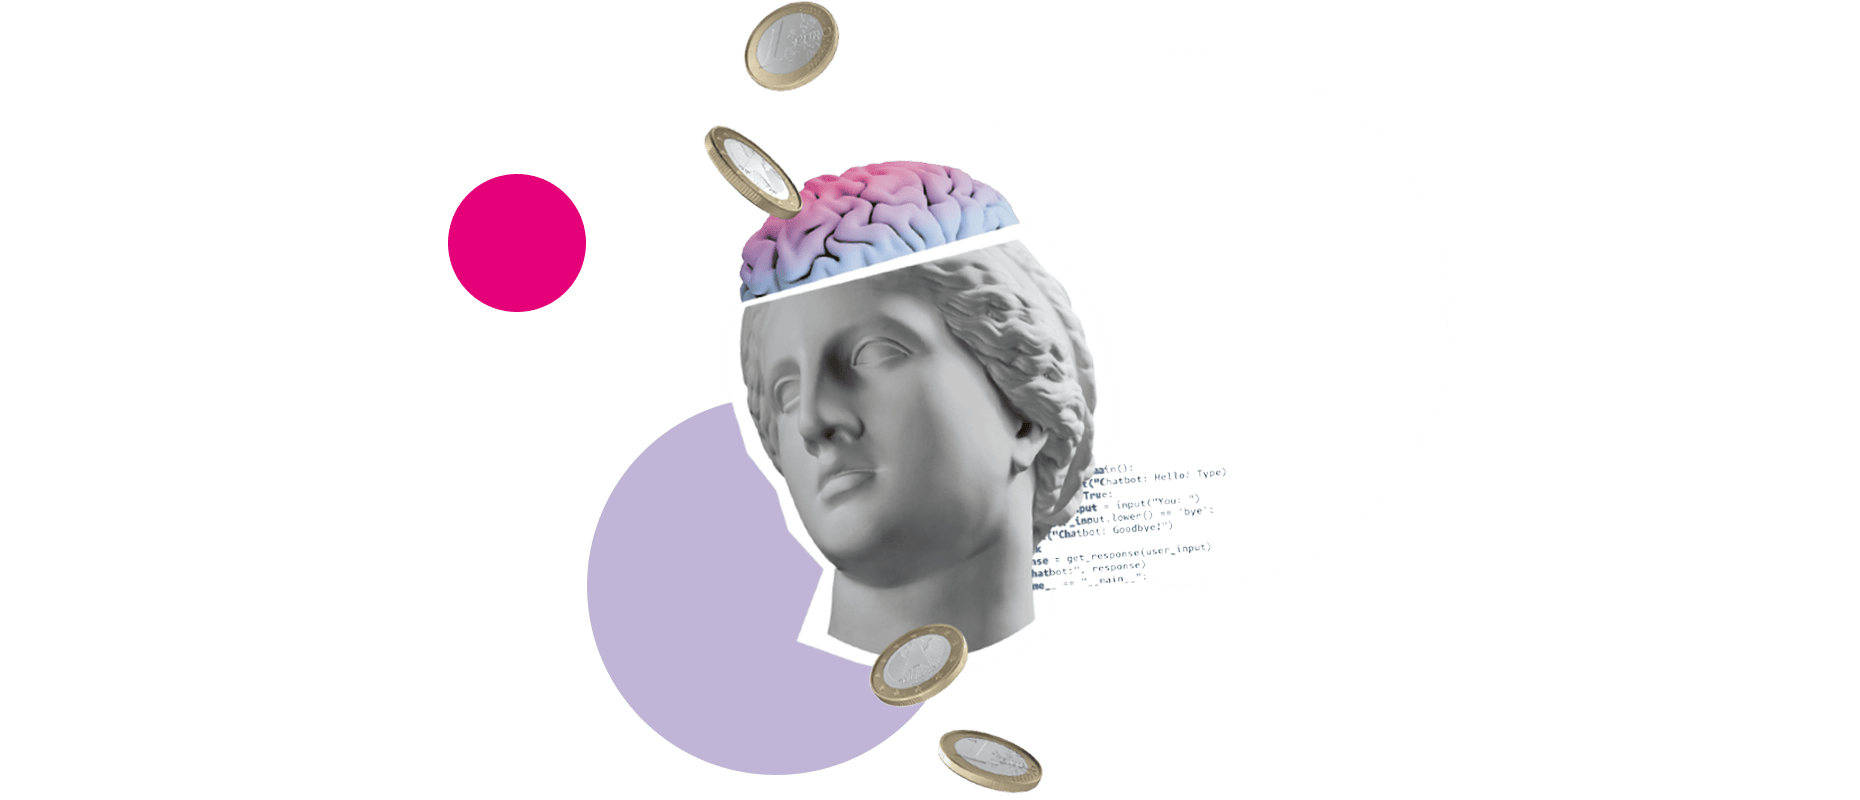 Ein Statuenkopf, in dem man ins Gehirn blicken kann, symbolisiert das KI-Webinar, mit dem die Einsatzmöglichkeiten von künstlicher Intelligenz vermittelt wird